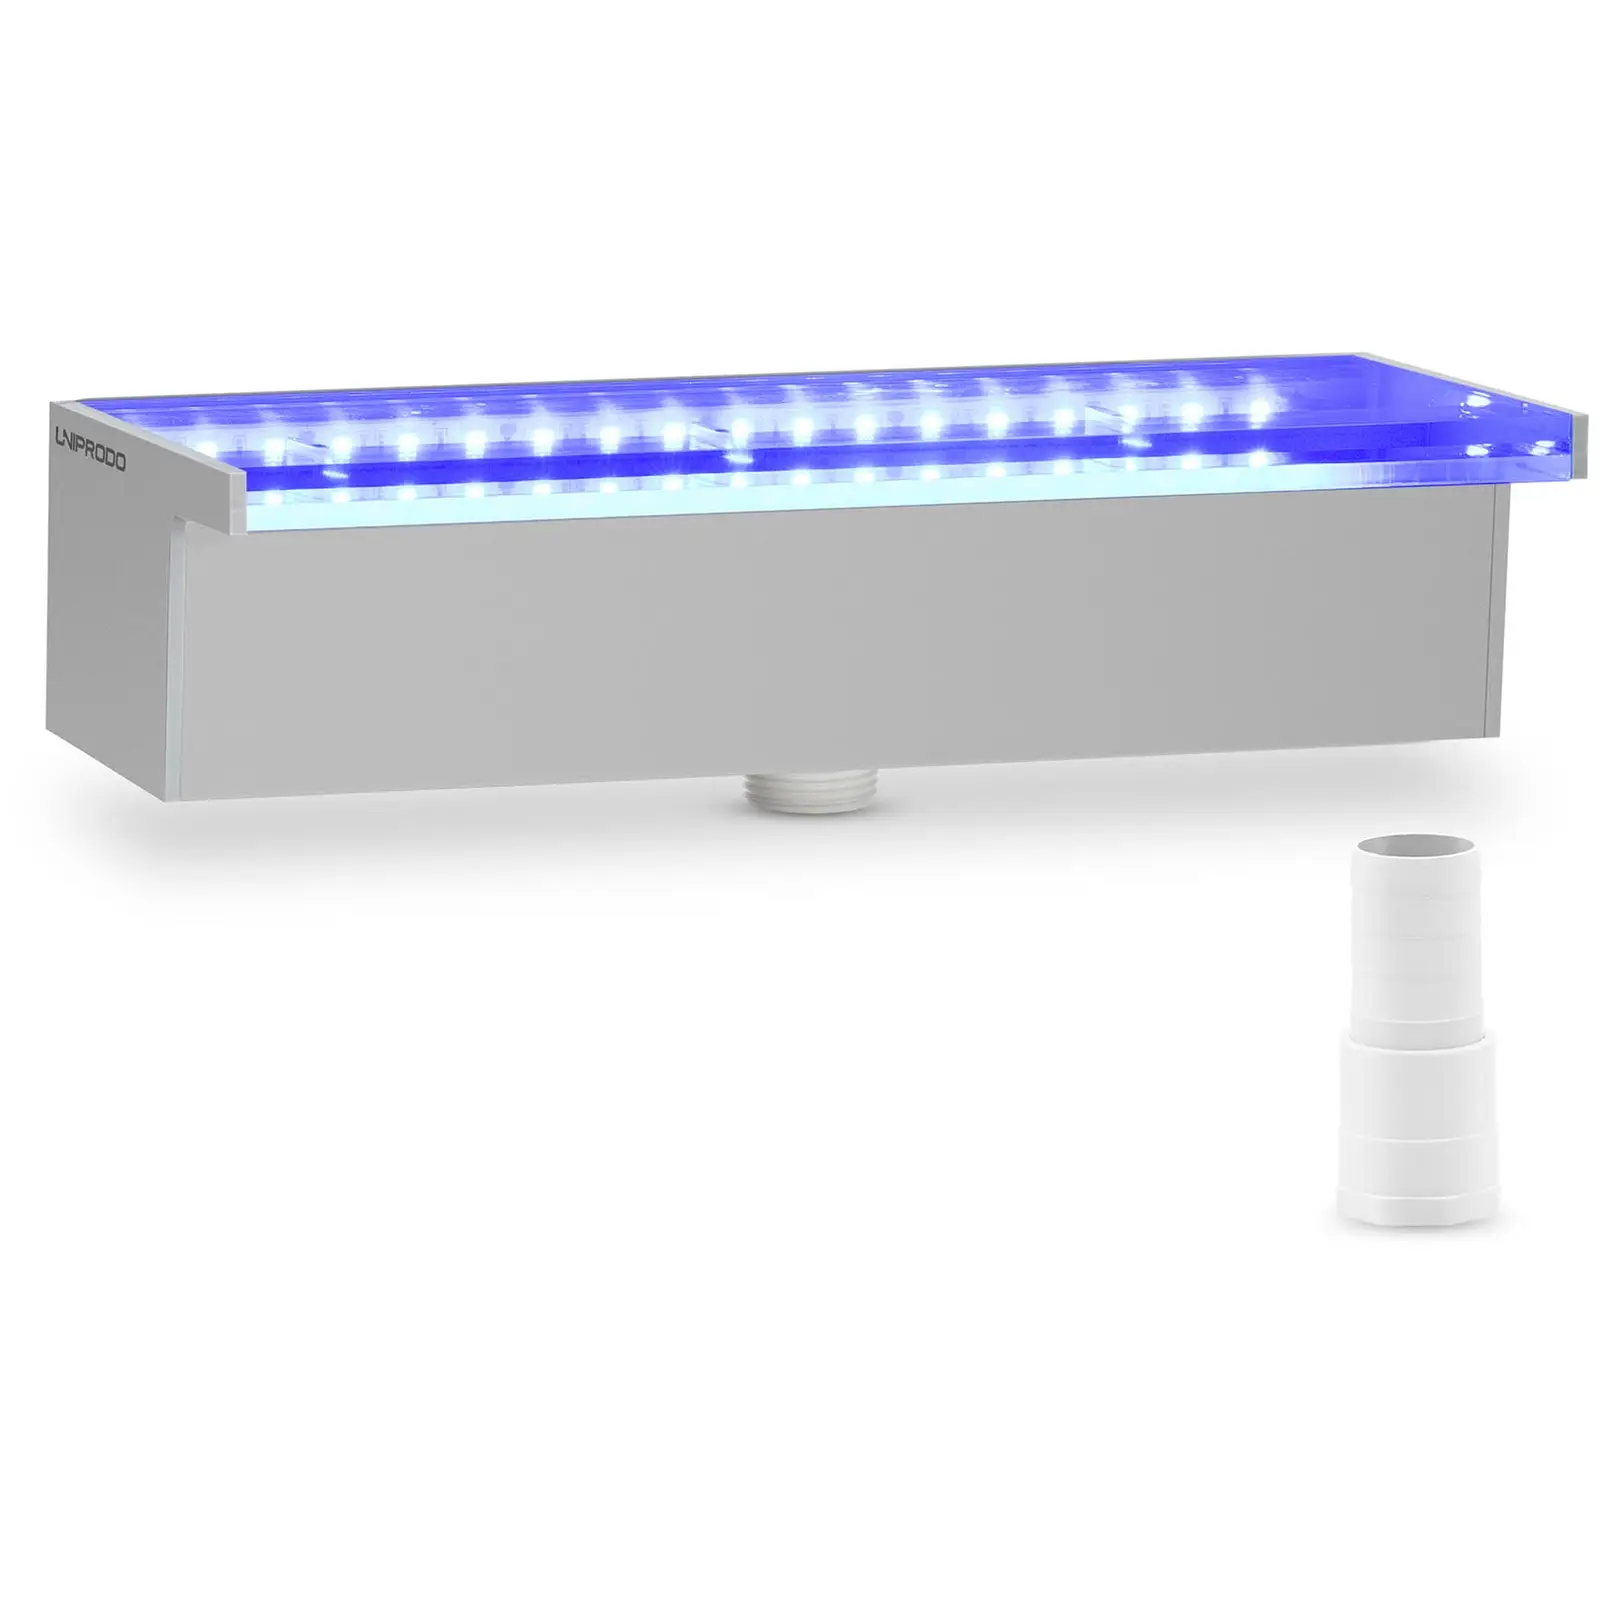 Schwalldusche - 30 cm - LED-Beleuchtung - Blau / Weiß - tiefer Wasserauslauf